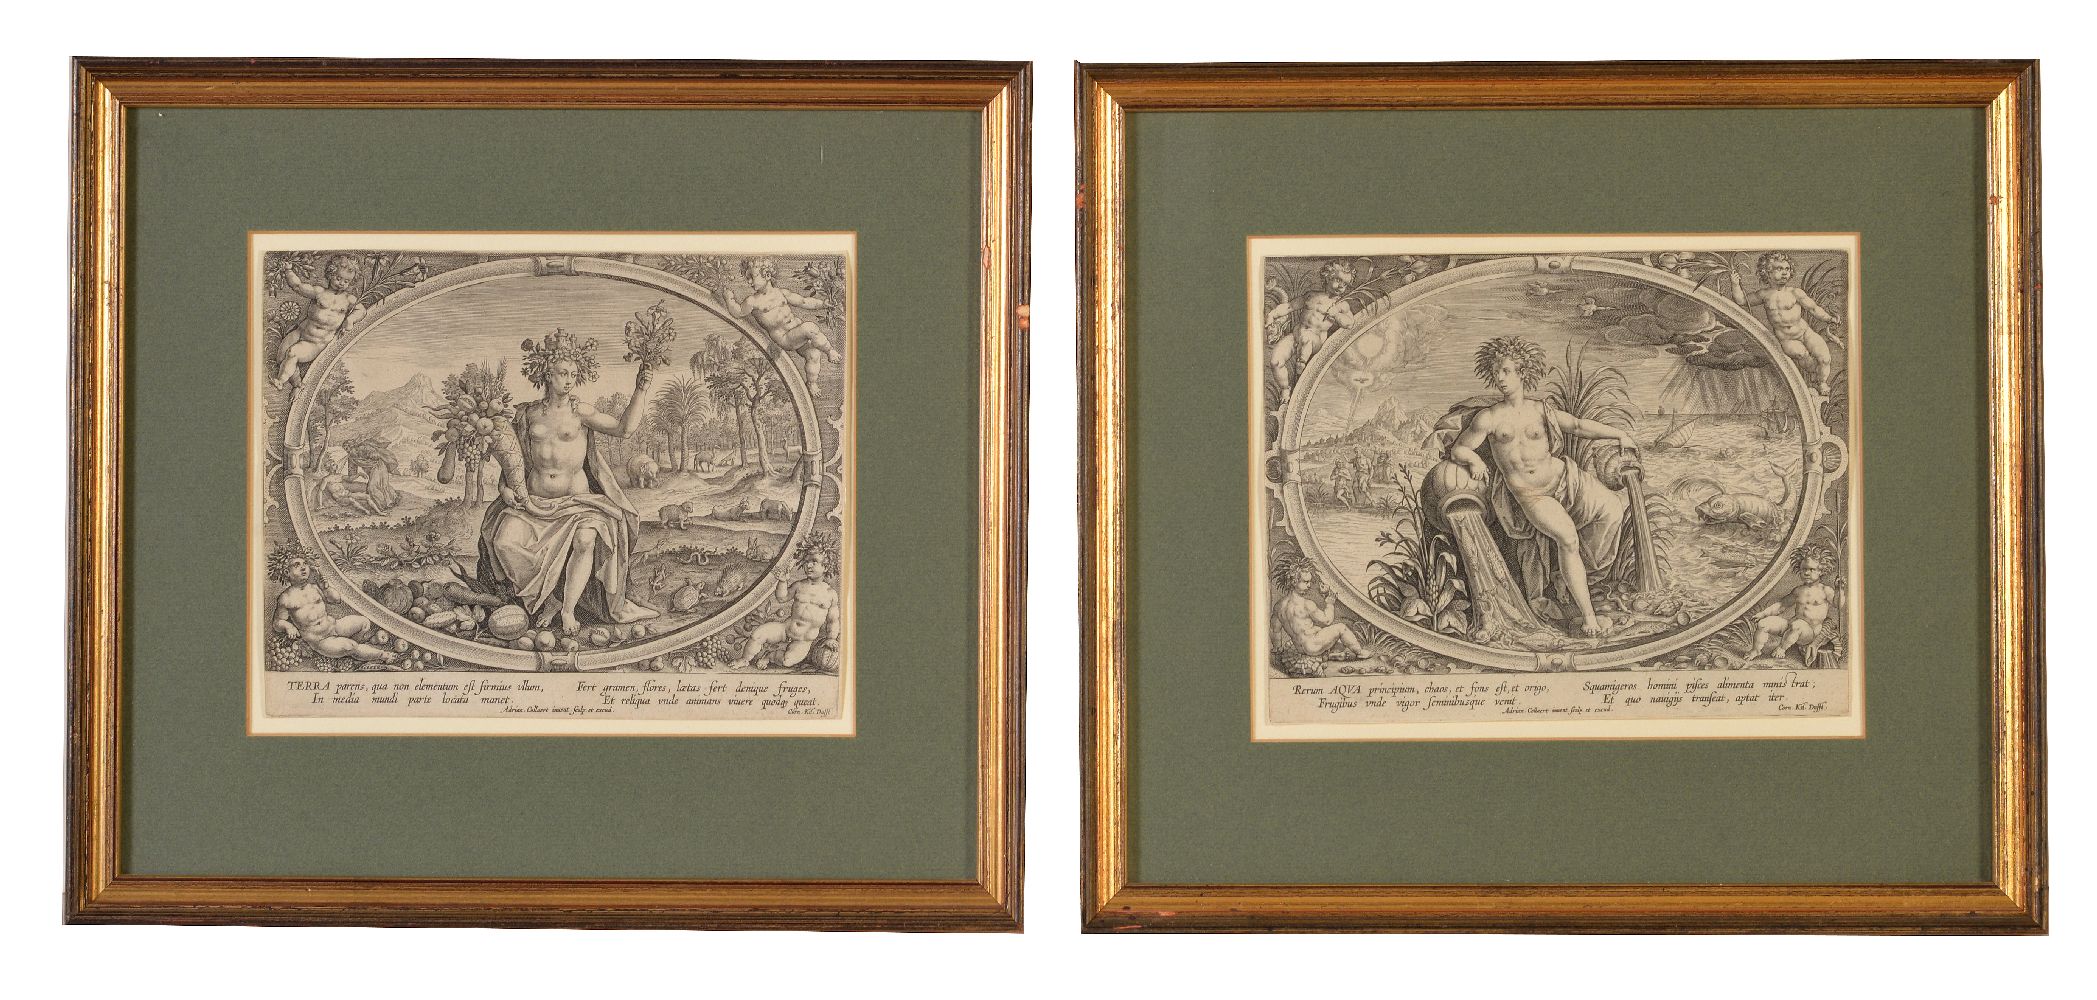 Adriaen Collaert (circa 1560-1618) Terra; Aqua; Aer; Ignis The set of 4 engravings of the - Image 6 of 6